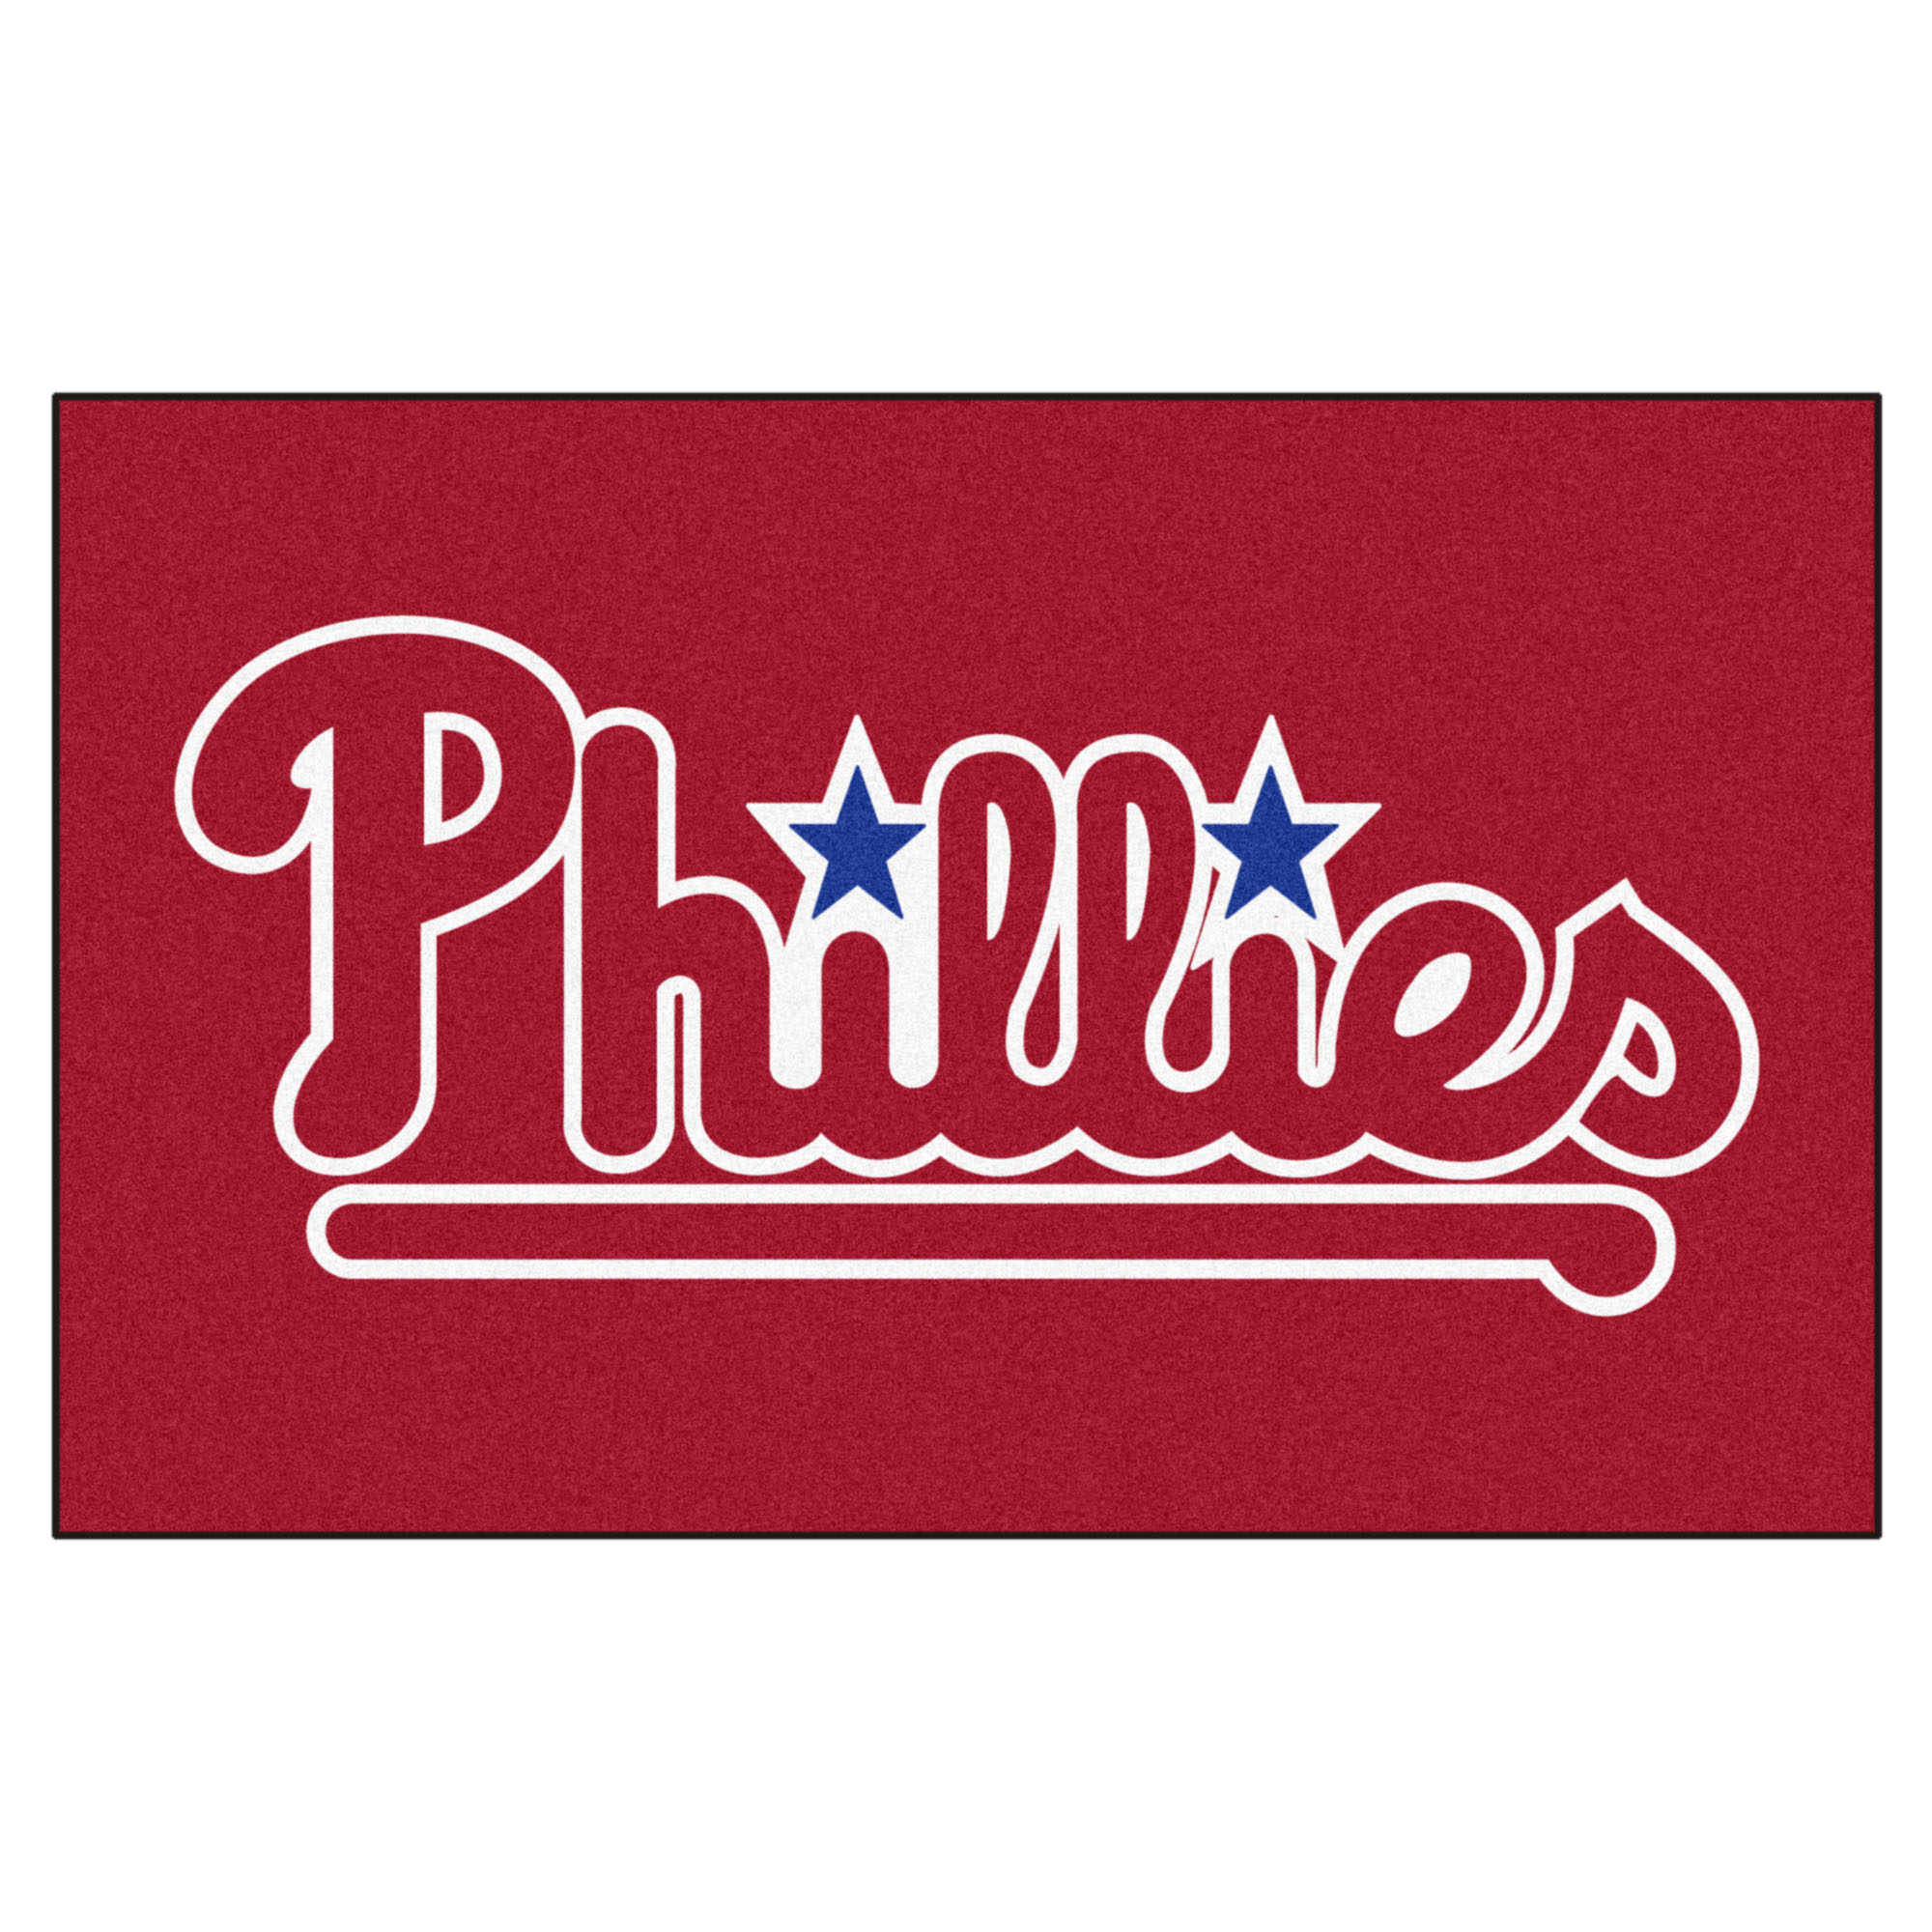 Philadelphia Phillies Logo Doormat.